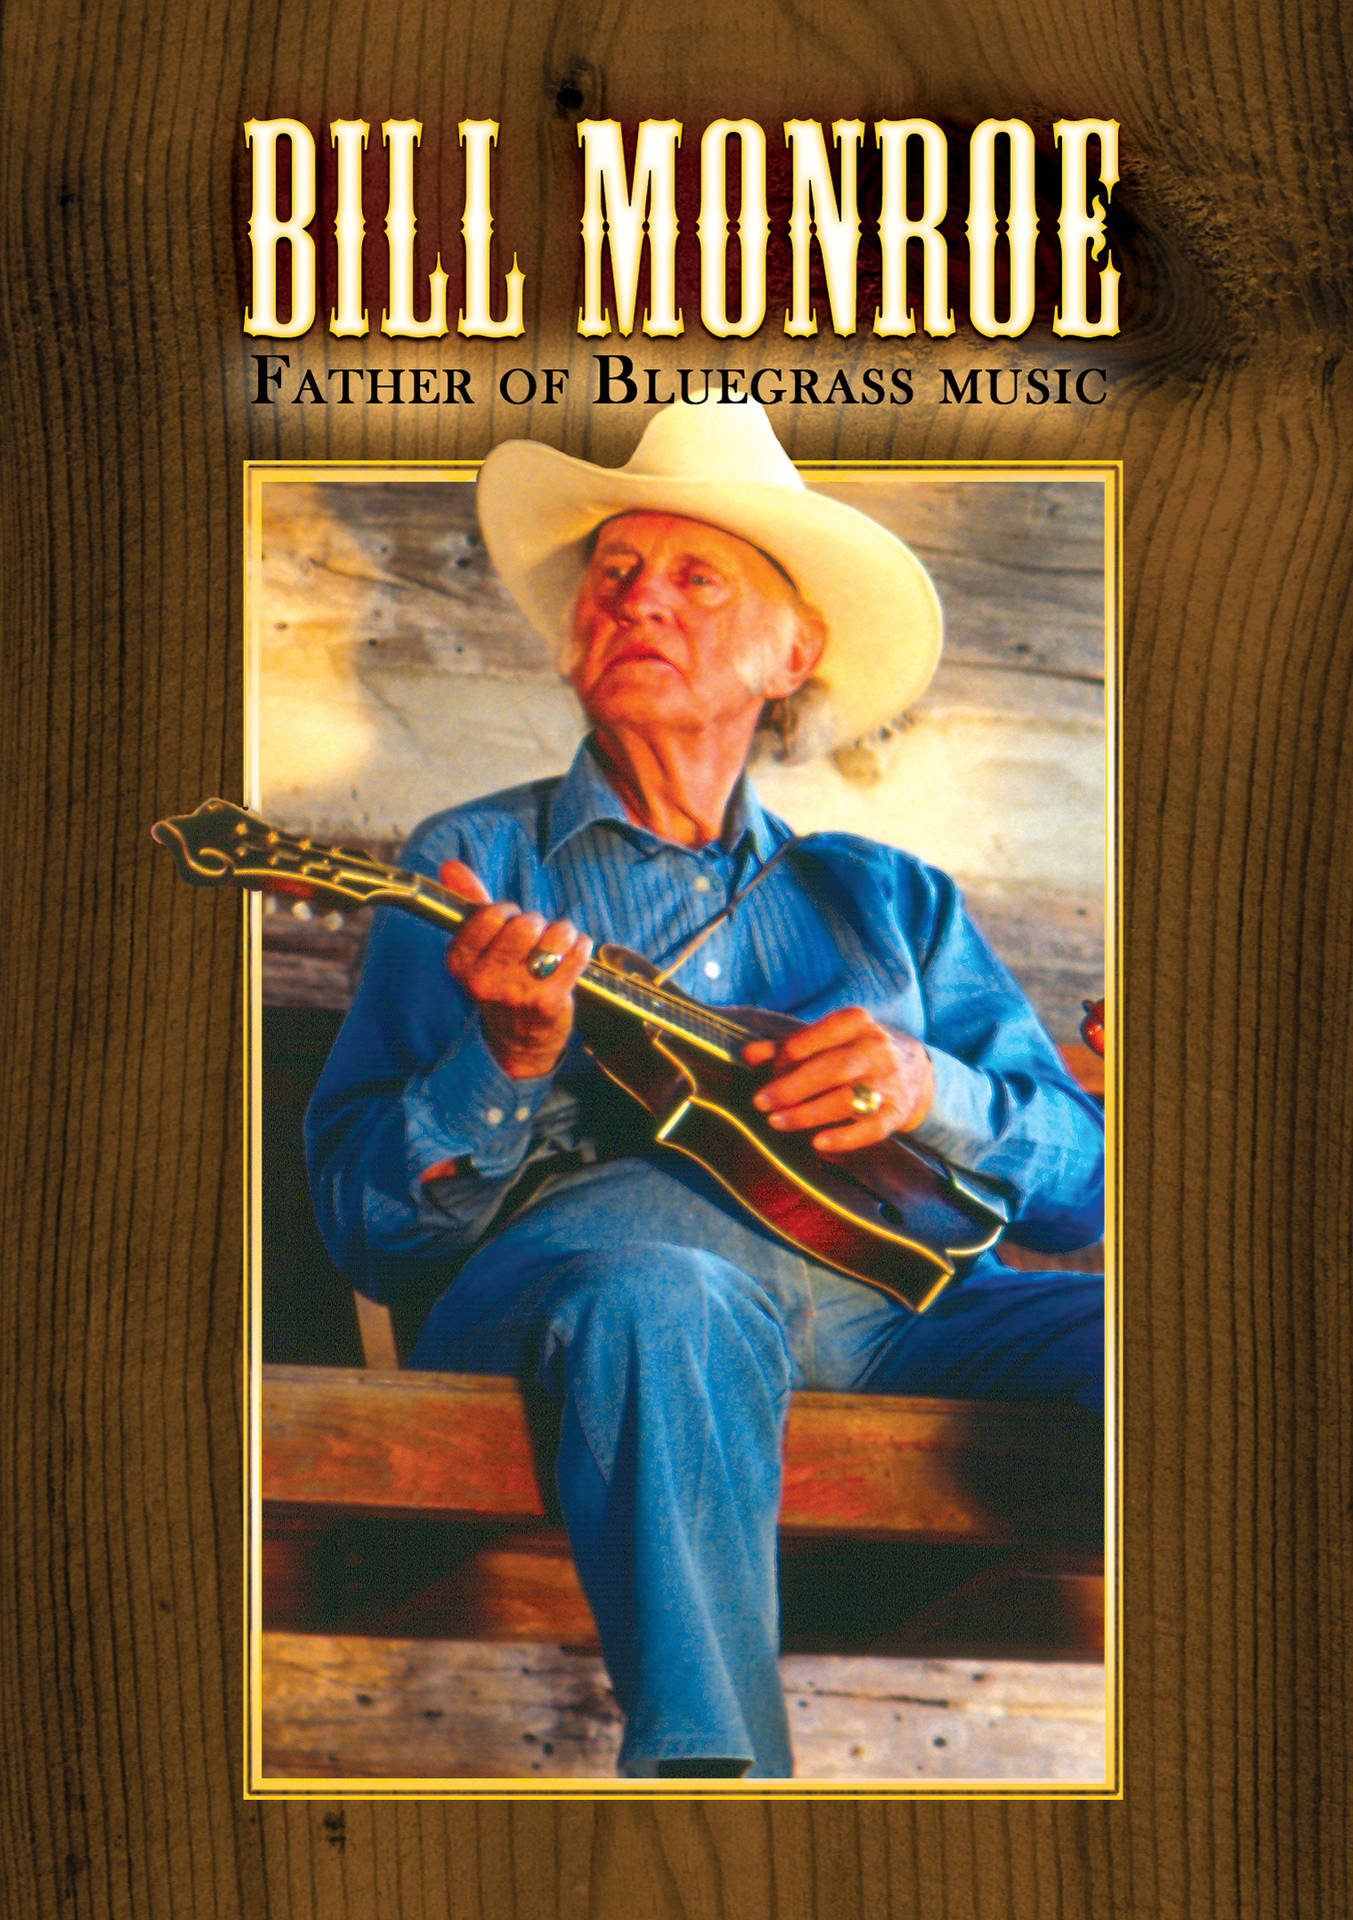 Bill Monroe Father Of Bluegrass Music Album Wallpaper